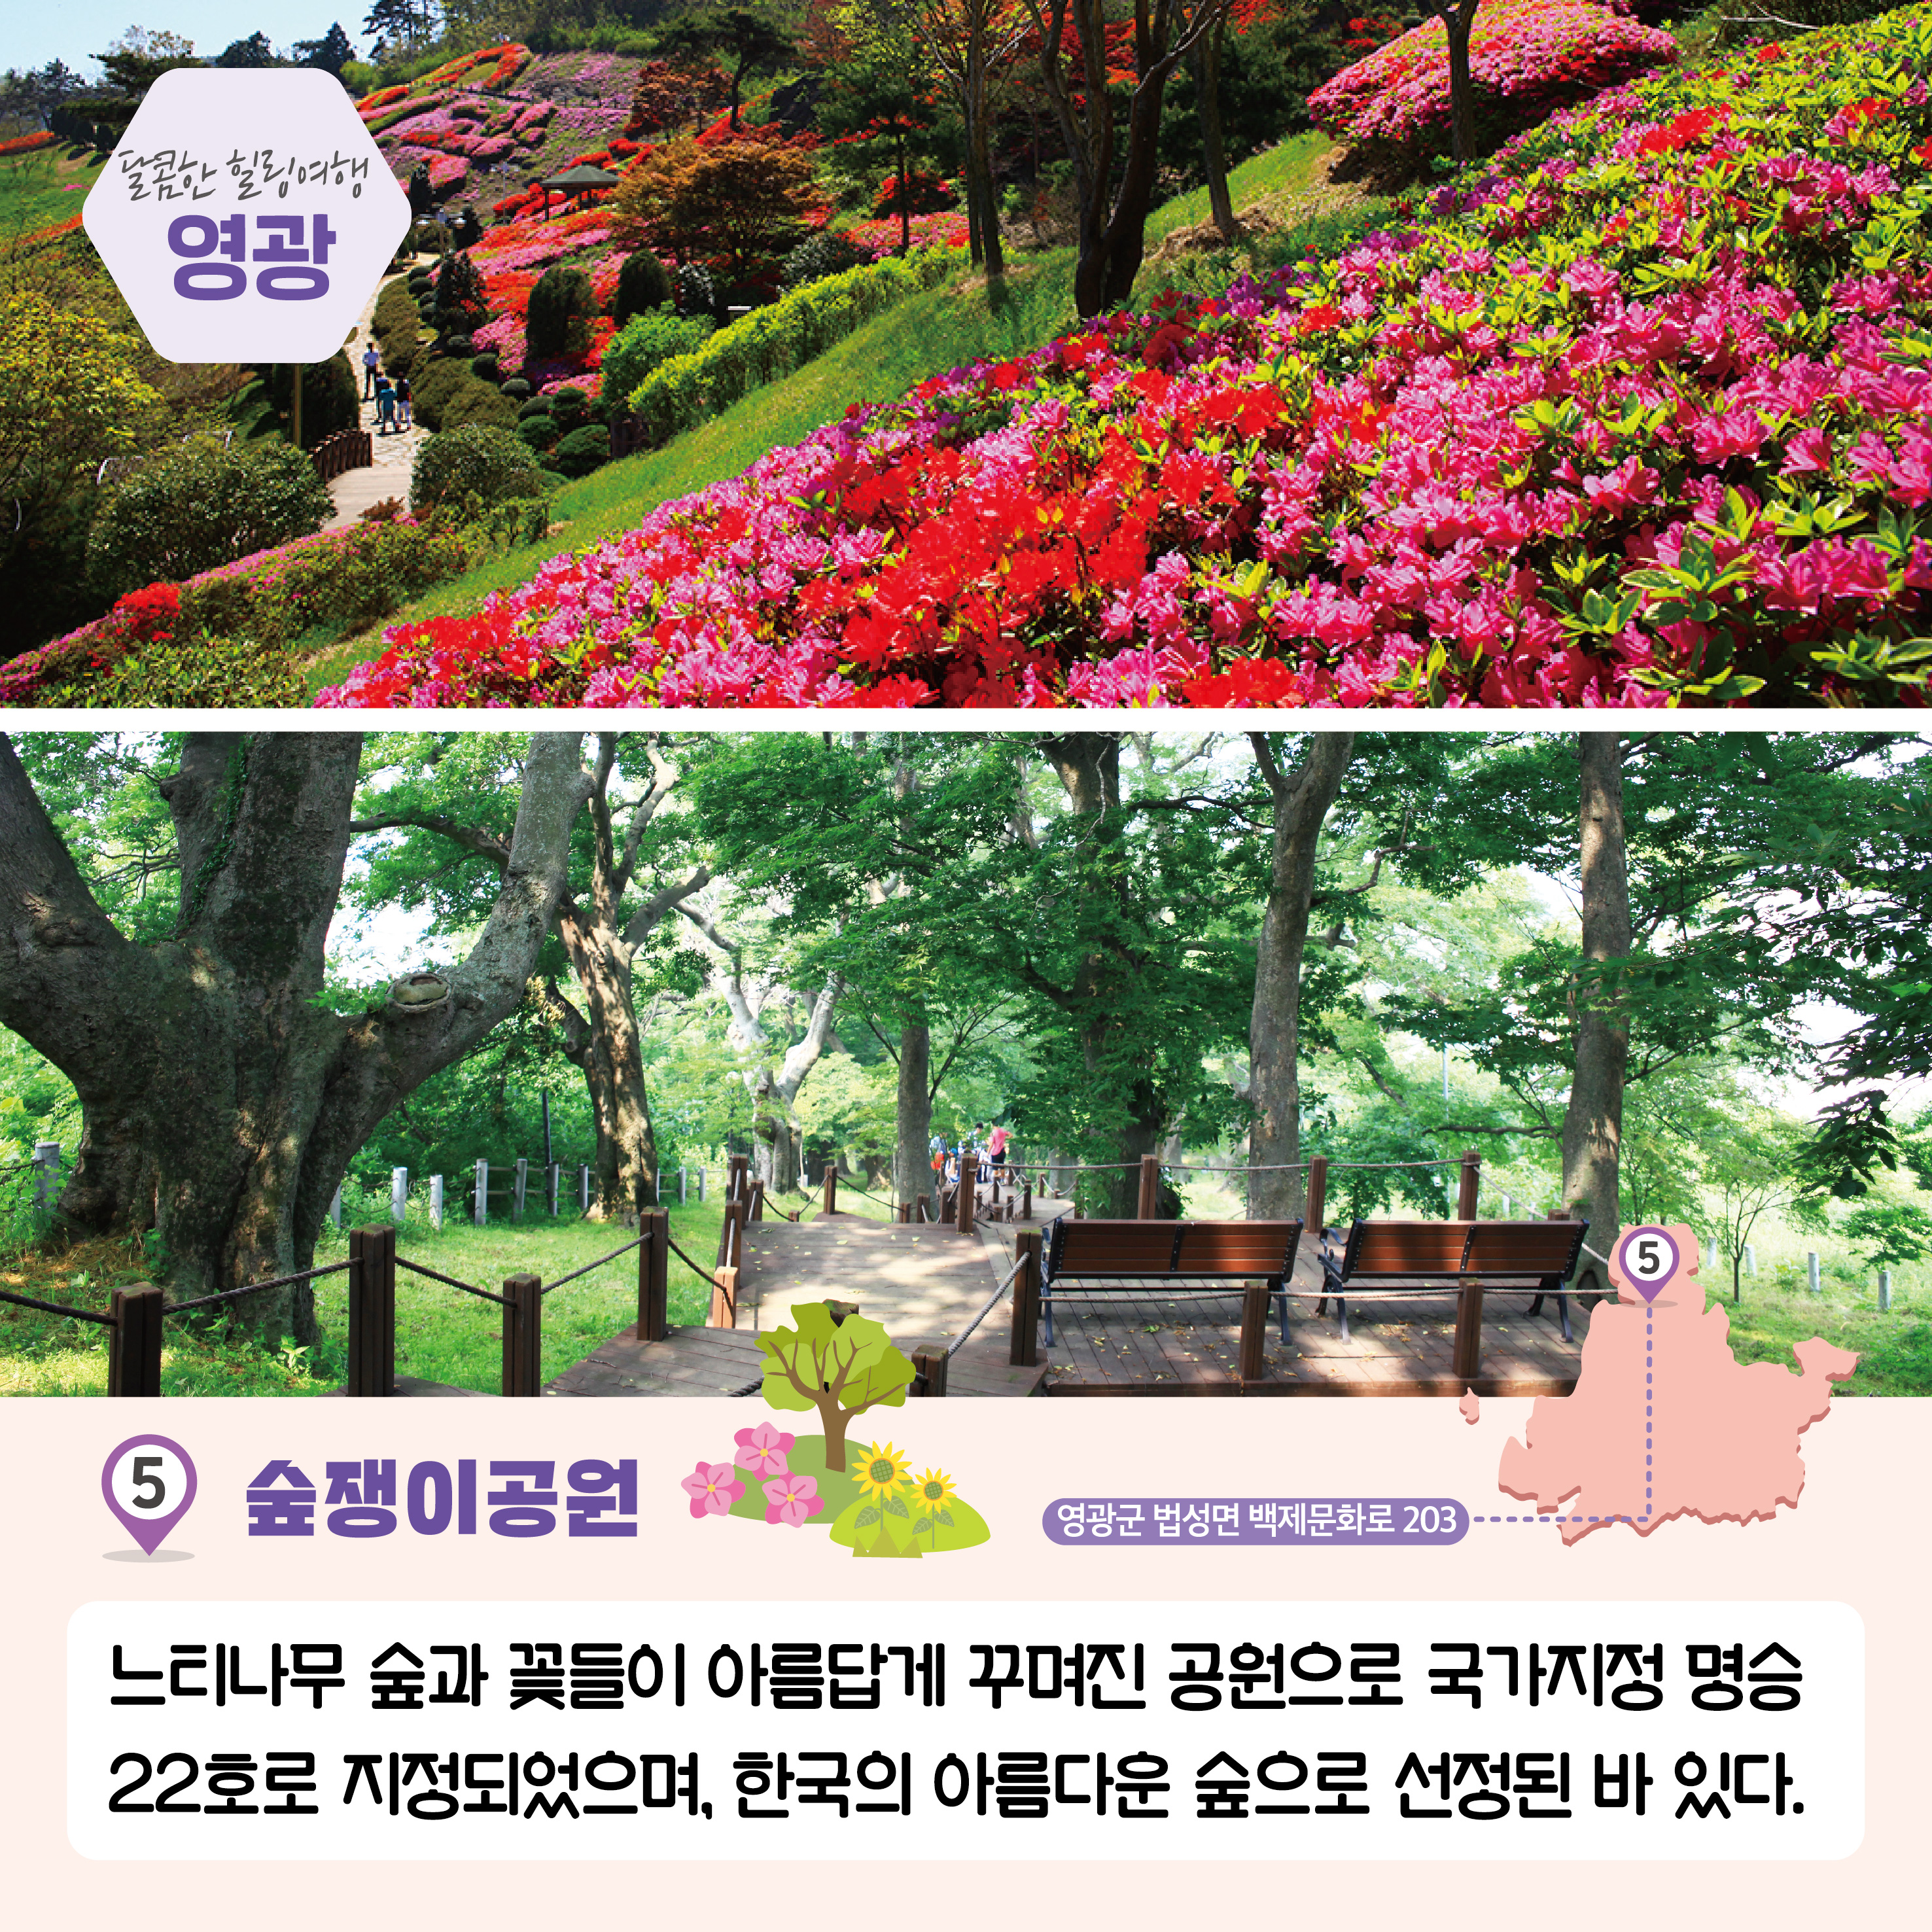 달콤한 힐링여행 영광, 5. 숲쟁이공원, 영광군 법성면 백제문화로 203, 느티나무 숲과 꽃들이 아름답게 꾸며진 공원으로 국가지정 명승 22호로 지정되었으며, 한국의 아름다운 숲으로 선정된 바 있다. 